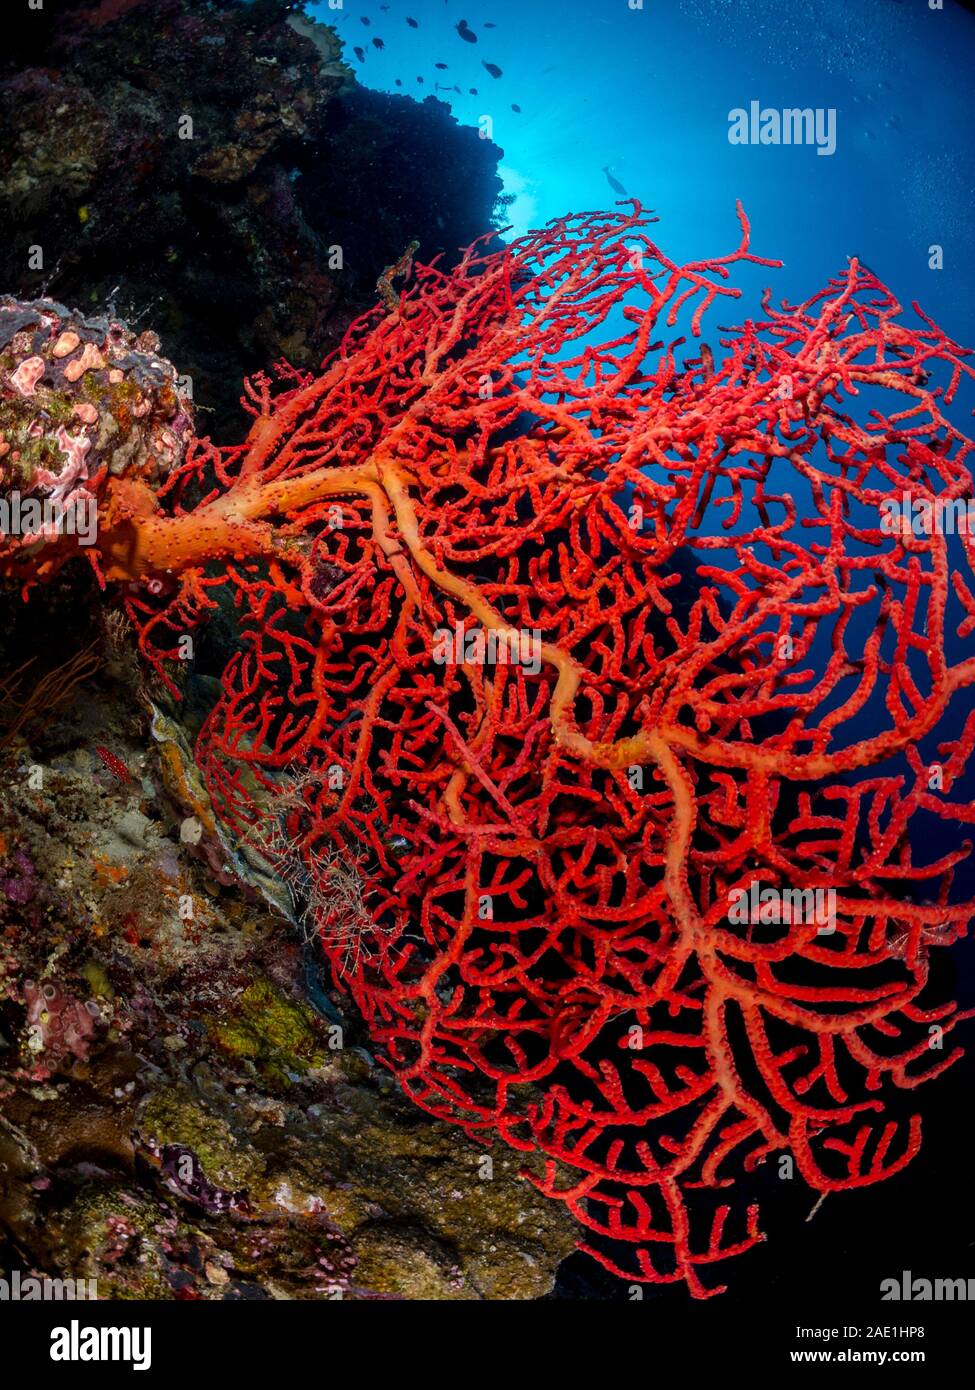 Gorgonia rouges, coraux mous, Subergorgia sp, Sipadan, Malaisie Banque D'Images